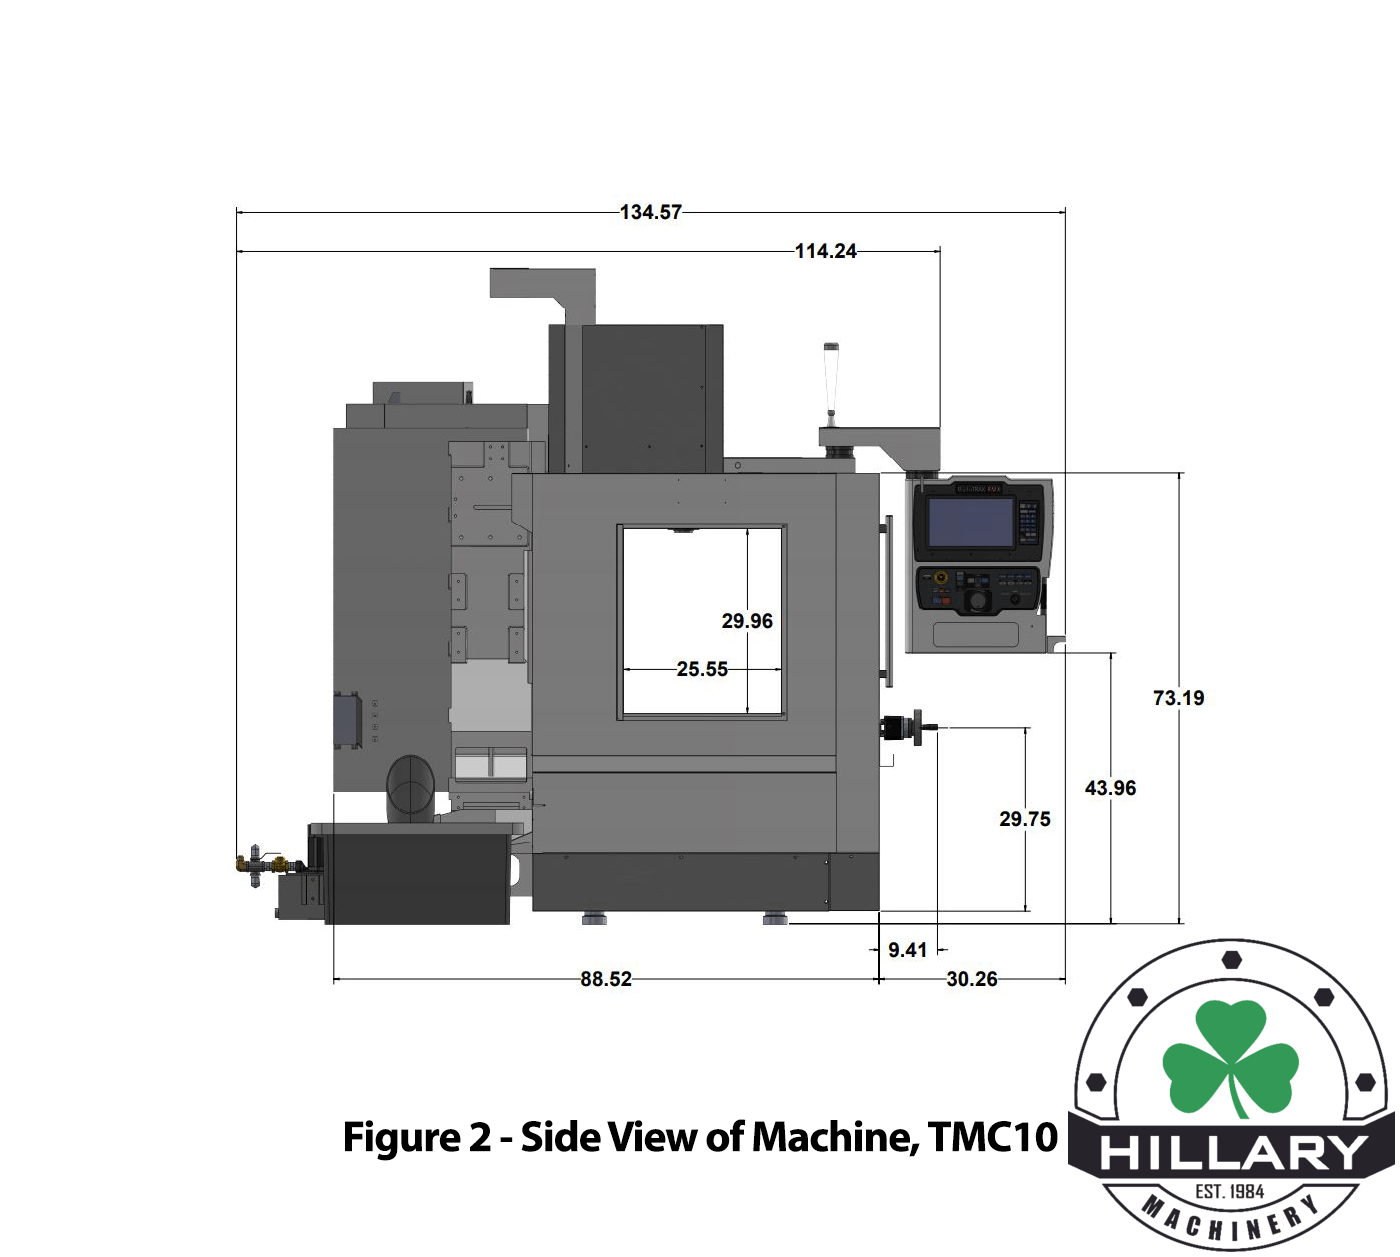 TRAK MACHINE TOOLS TMC10 Tool Room Mills | Hillary Machinery